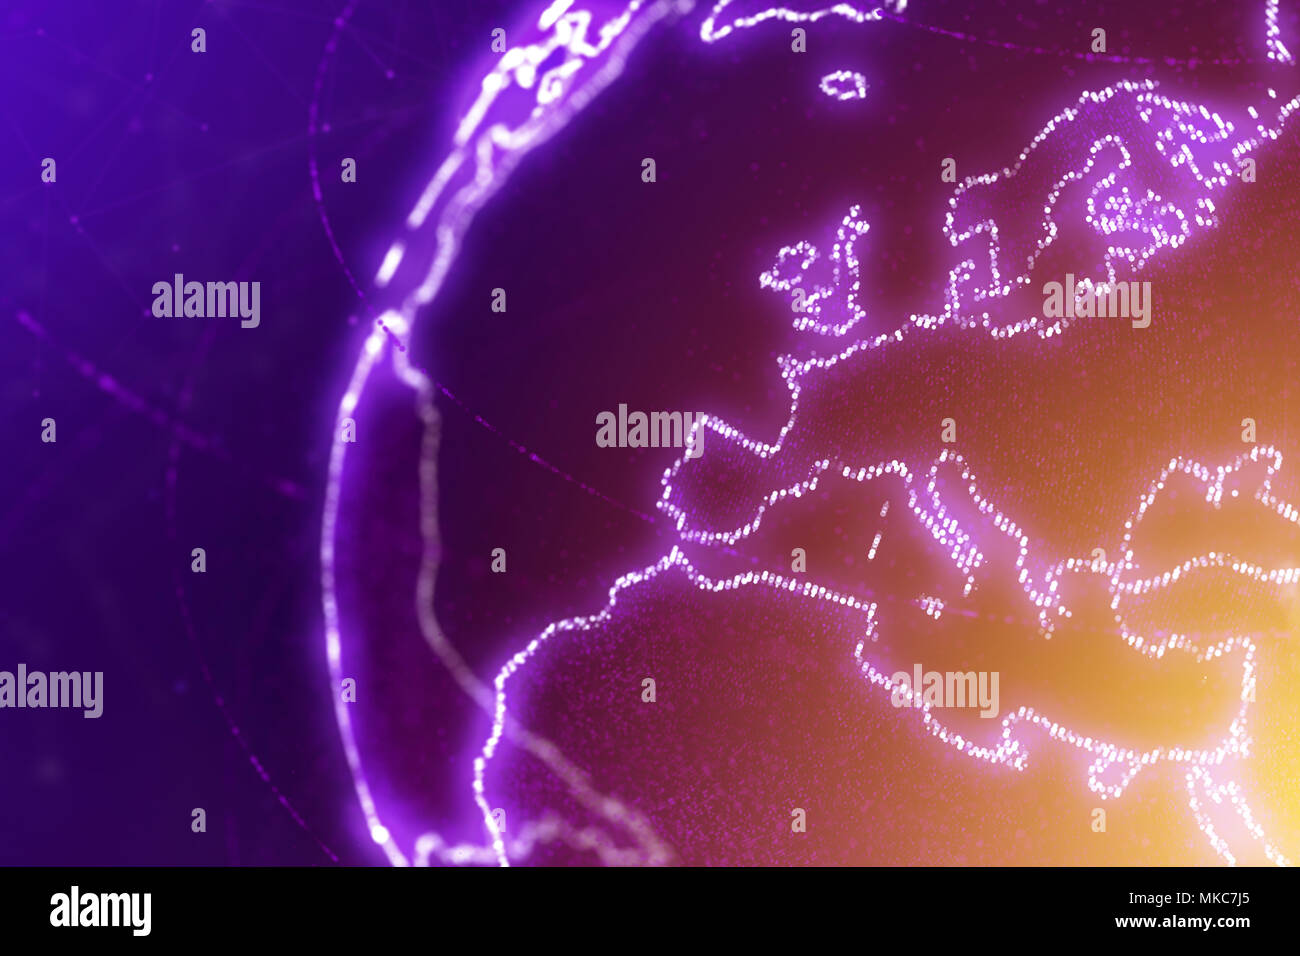 Europa Kontinent, Abschnitt der Weltkarte, abstrakte Darstellung Stockfoto